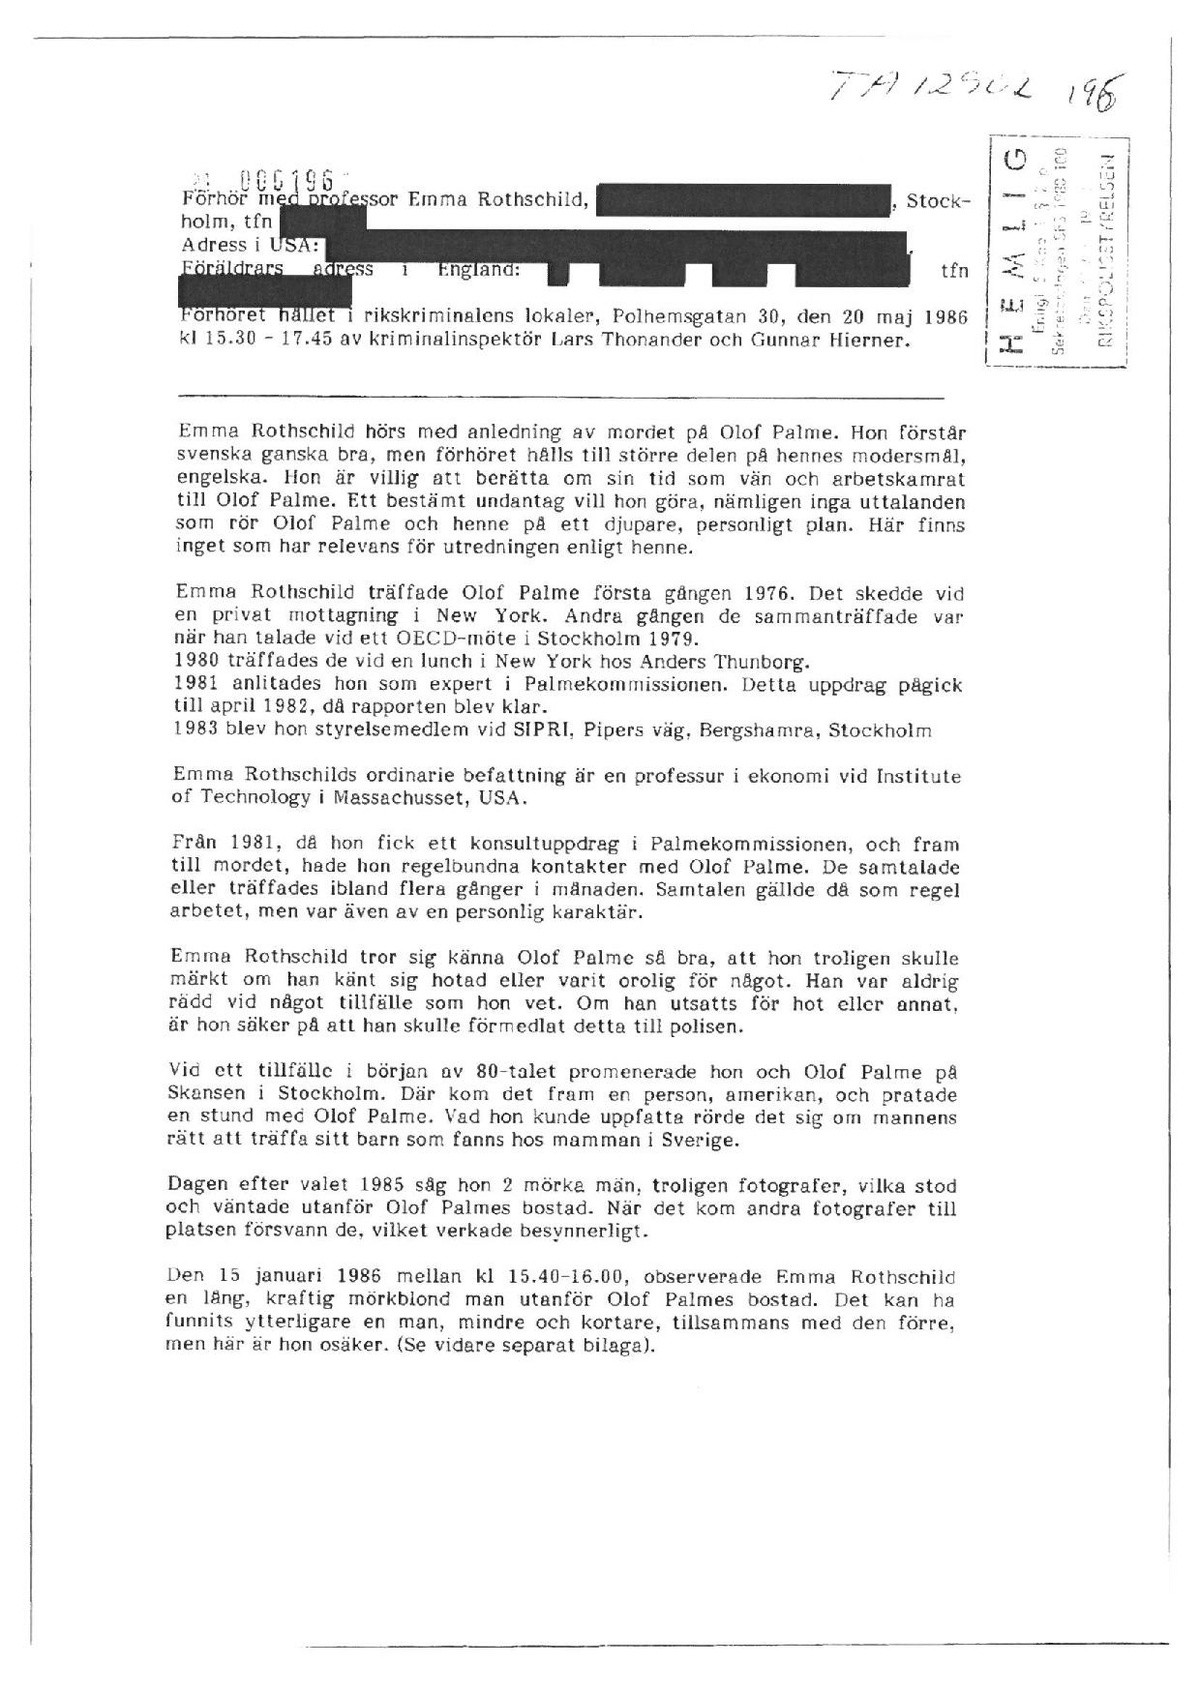 Pol-1986-05-20 TA12902-00 1530-1745 Emma Rotschild om Olof Palmes yrkesliv och misstänkt övervakning.pdf